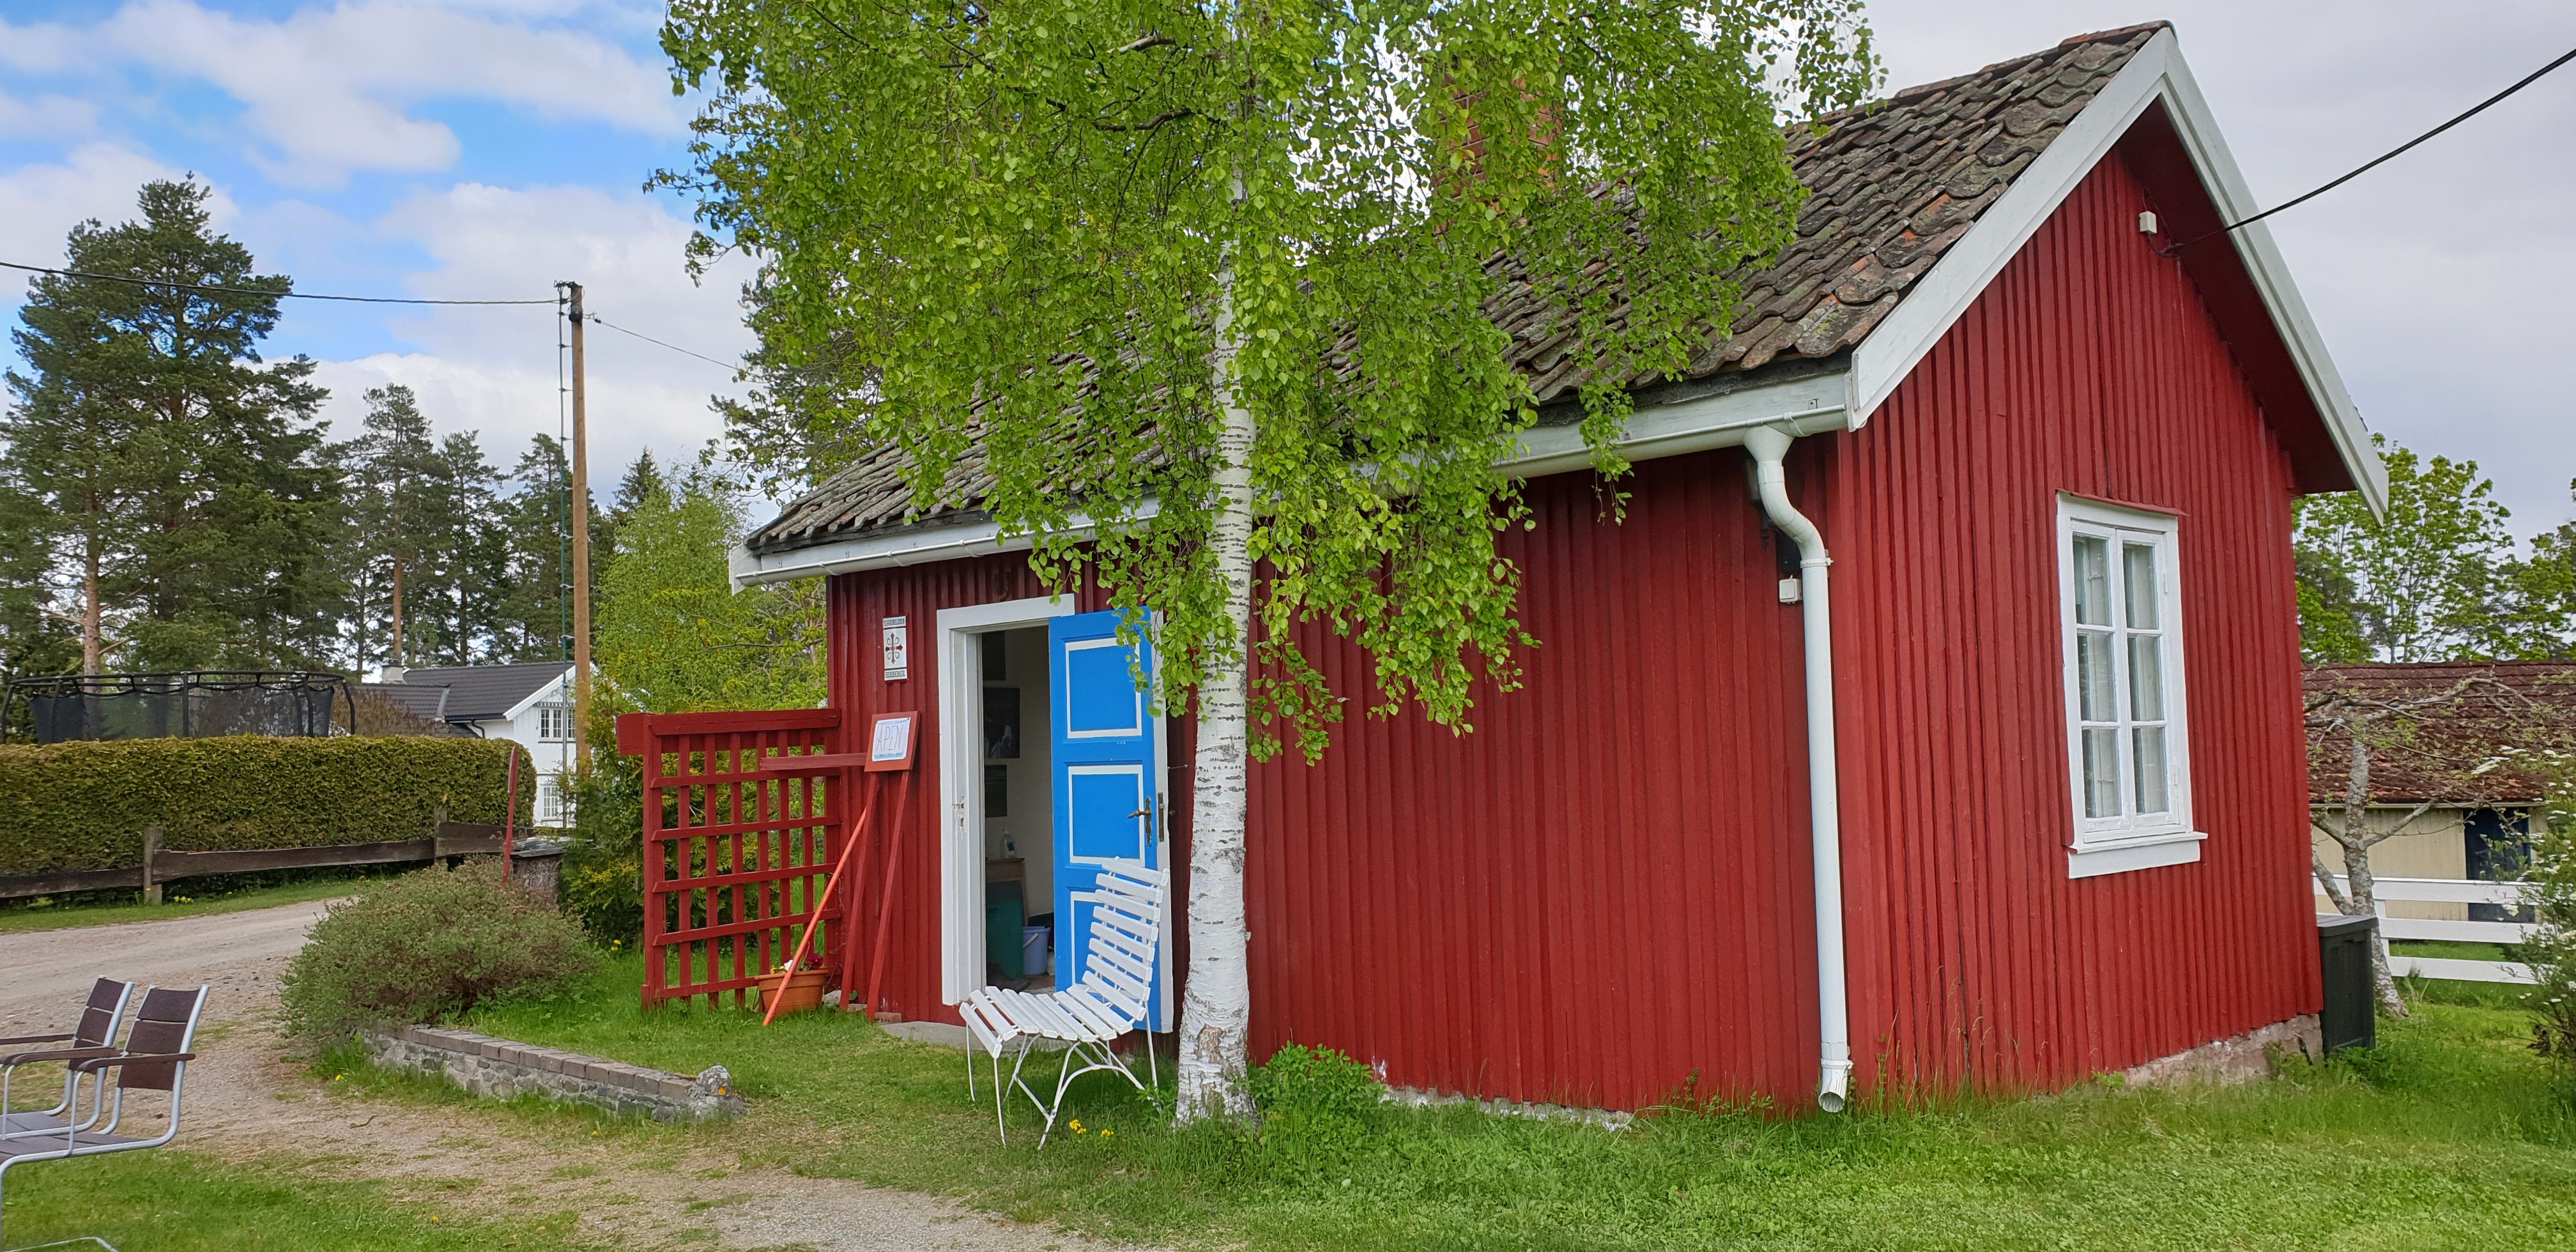 Skomakerstua ligger rett ved pilegrimsleden i Skarpsnogata 64 i Frøshaugåsen.